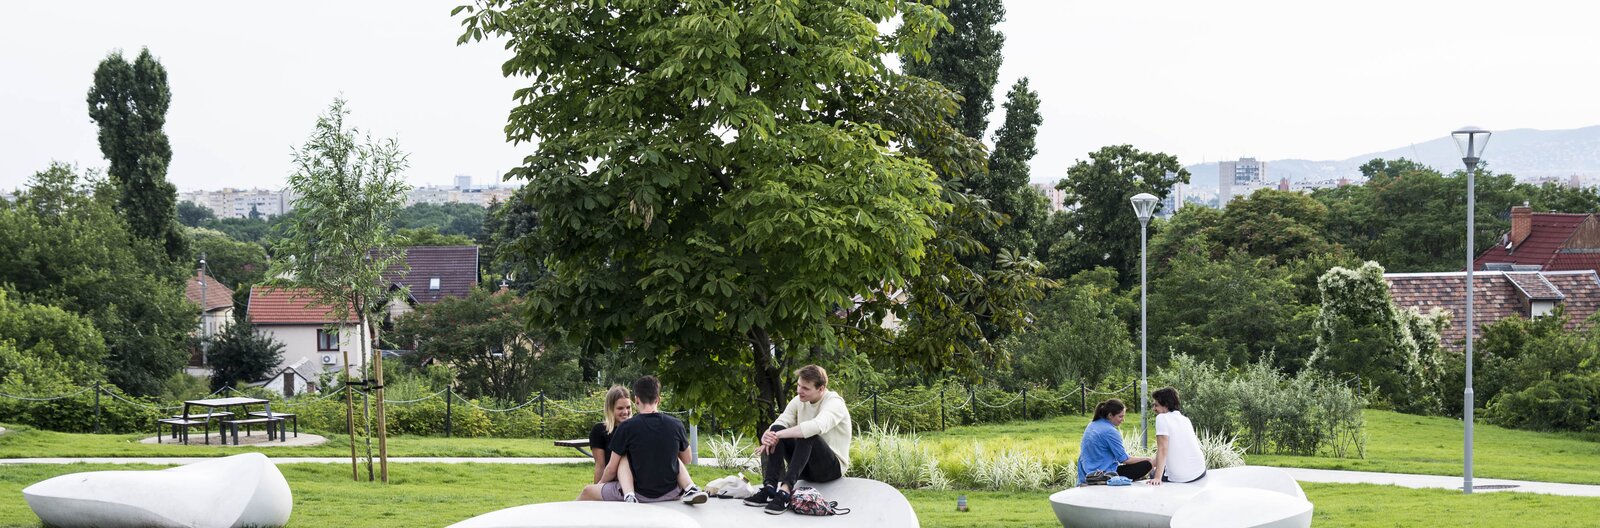 5 frissen felújított budapesti park, ahol jó hűsölni a kánikulában, de rejtenek valami izgalmat is